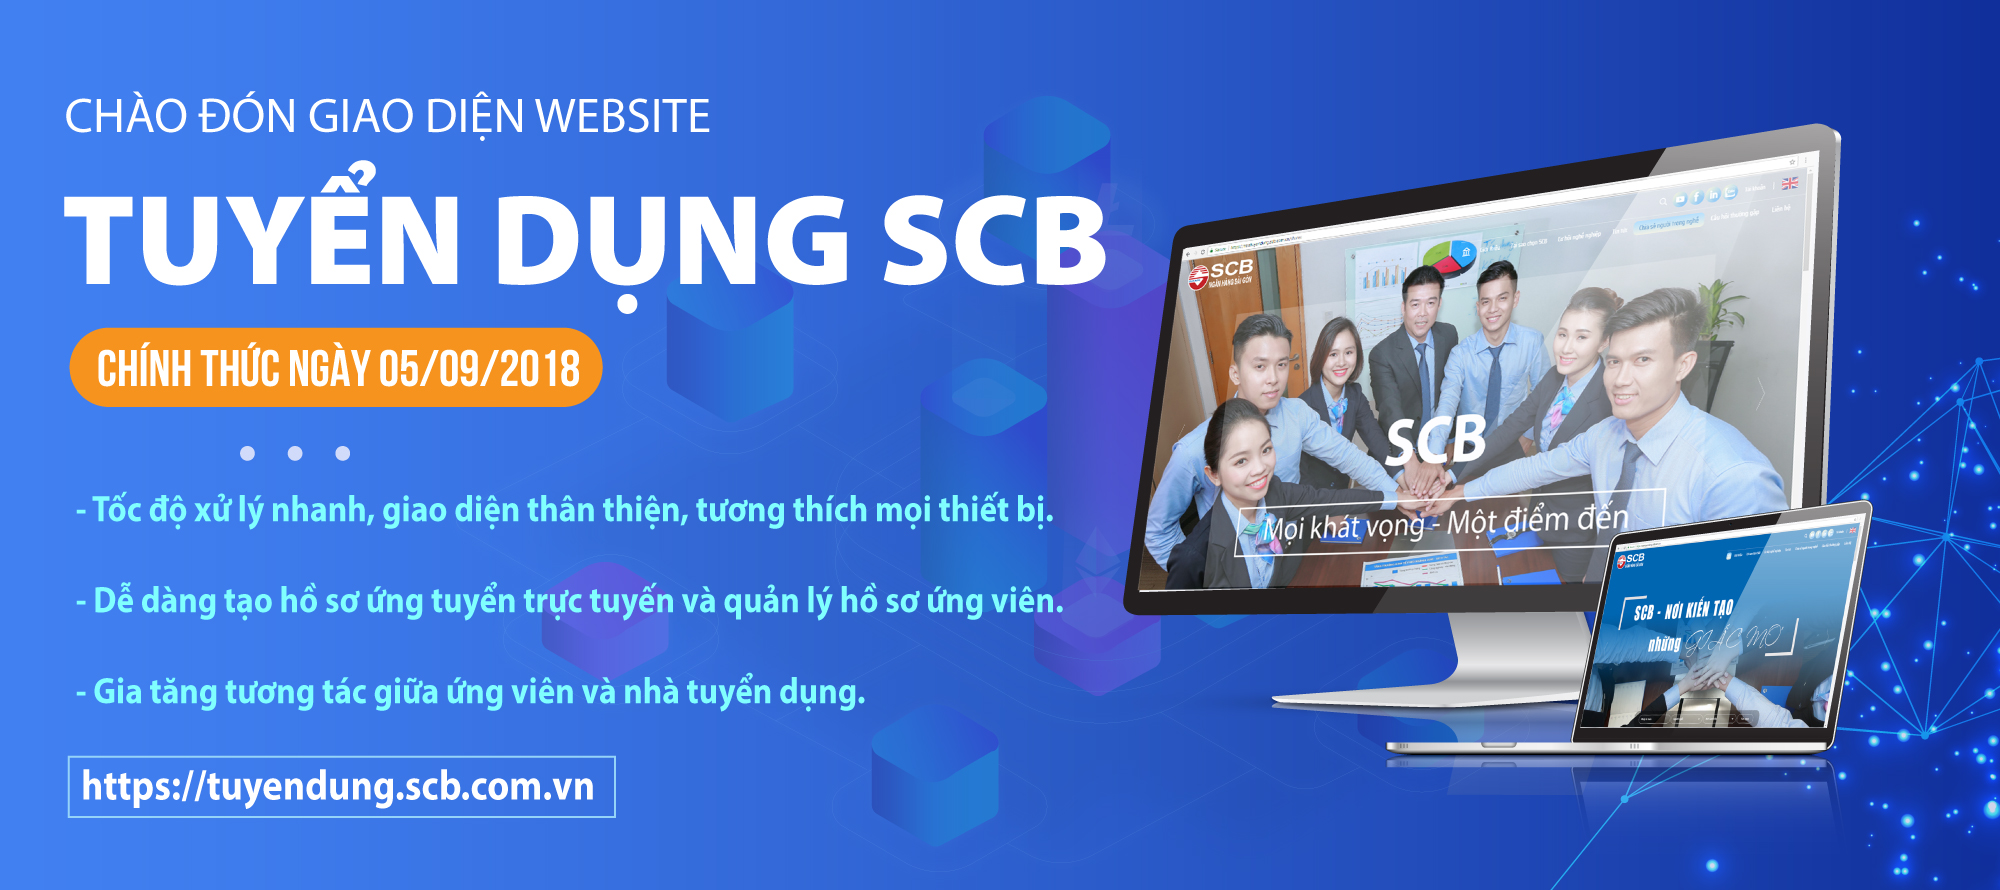 SCB ra mắt website tuyển dụng mới gia tăng tương tác với các ứng viên